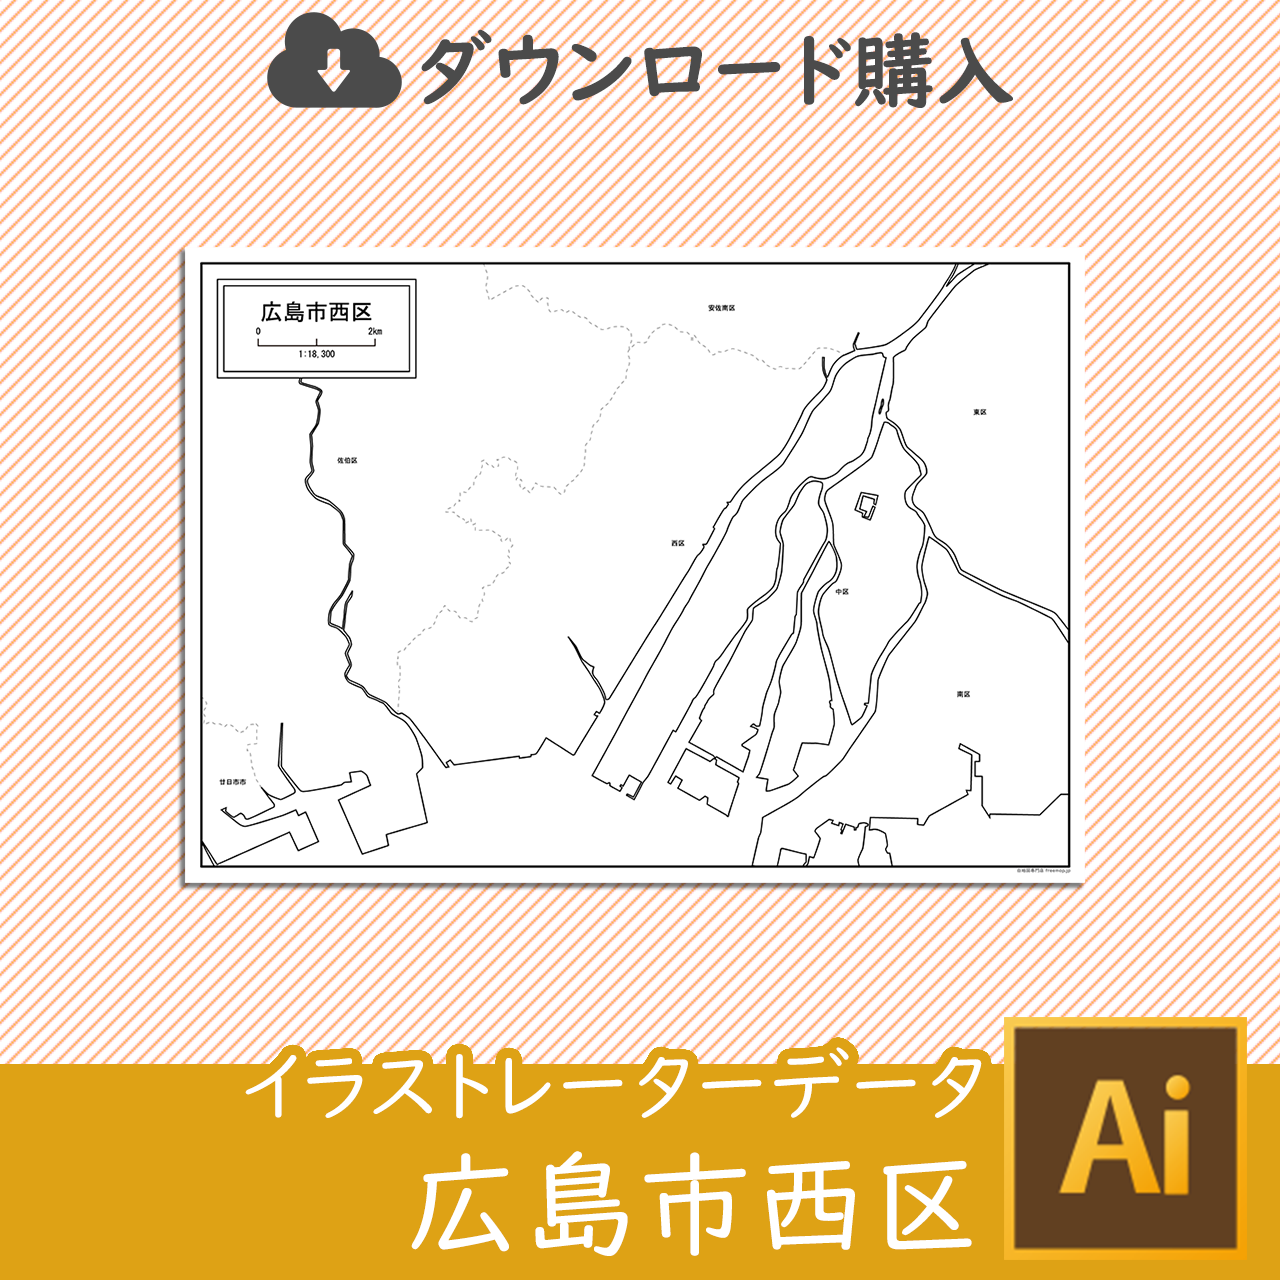 広島市西区のaiデータのサムネイル画像